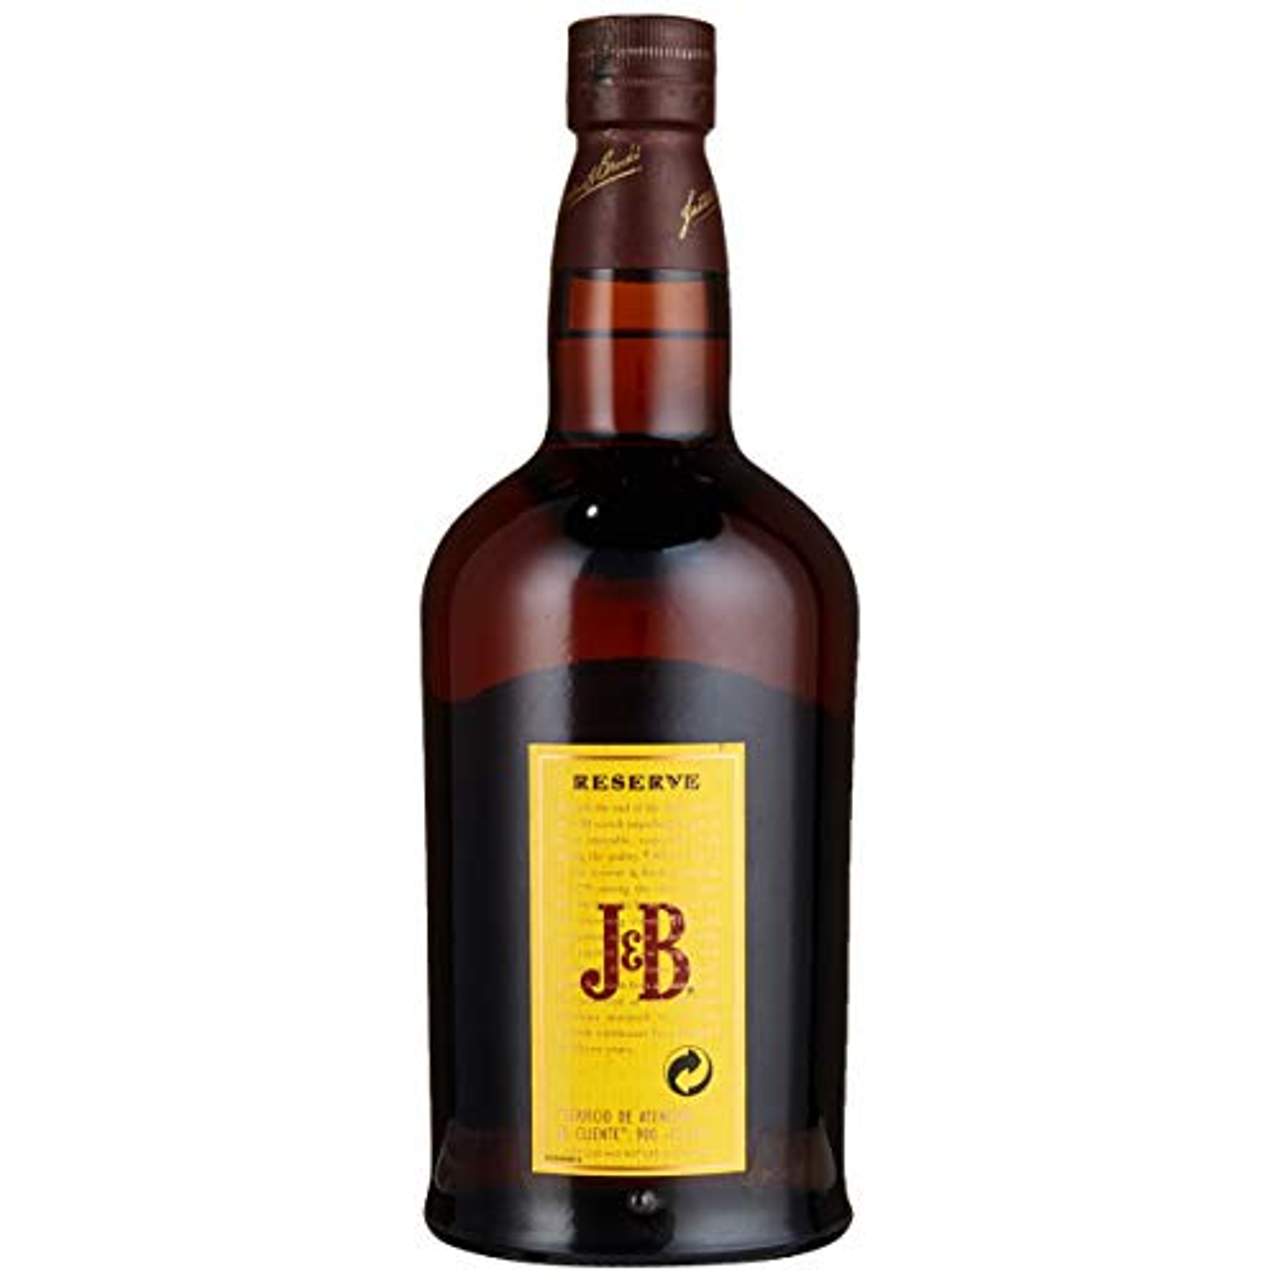 J & B Blended Scotch Whisky 15 Jahre